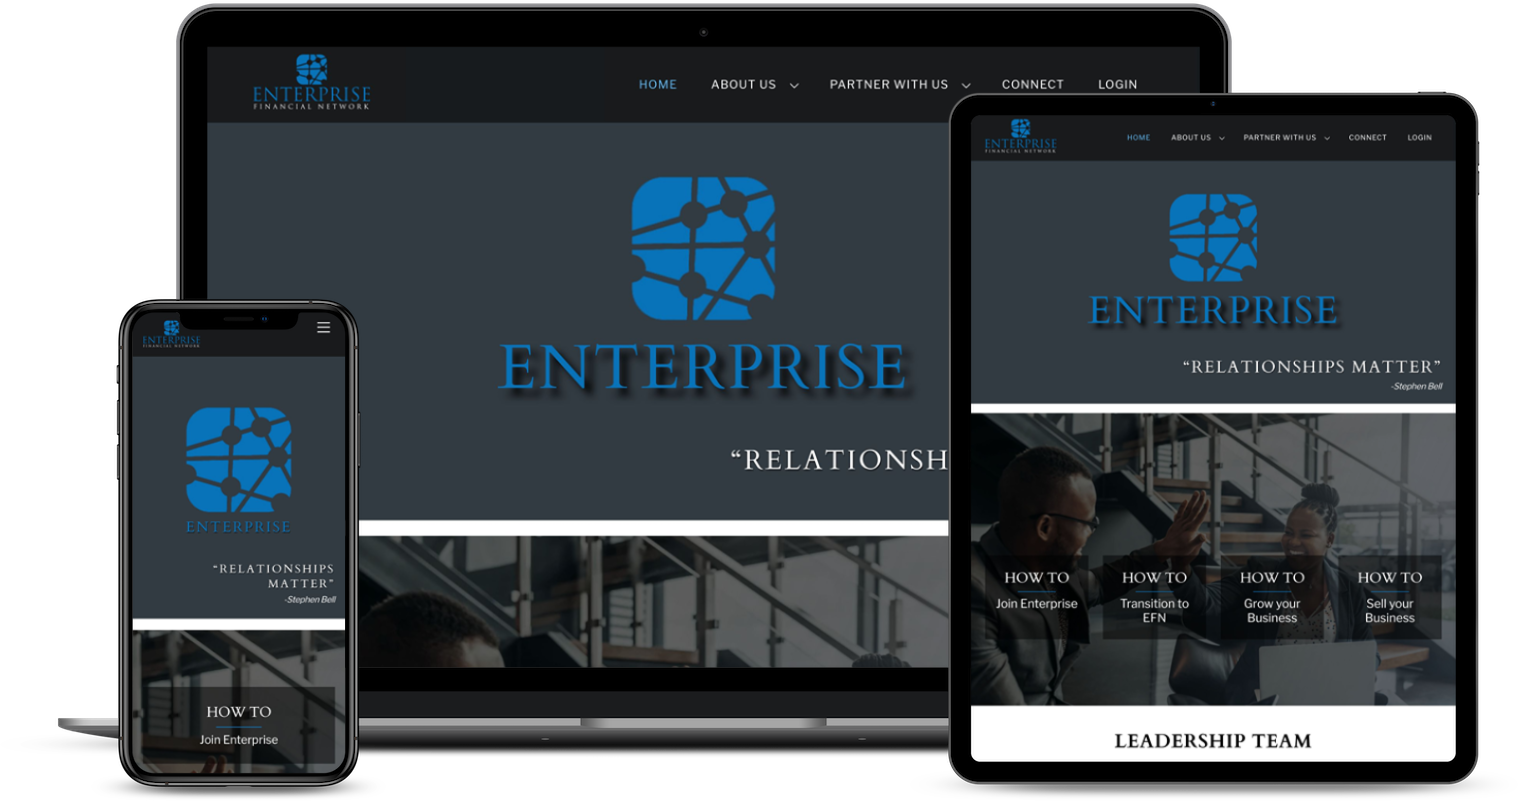 Enterprise Financial Network